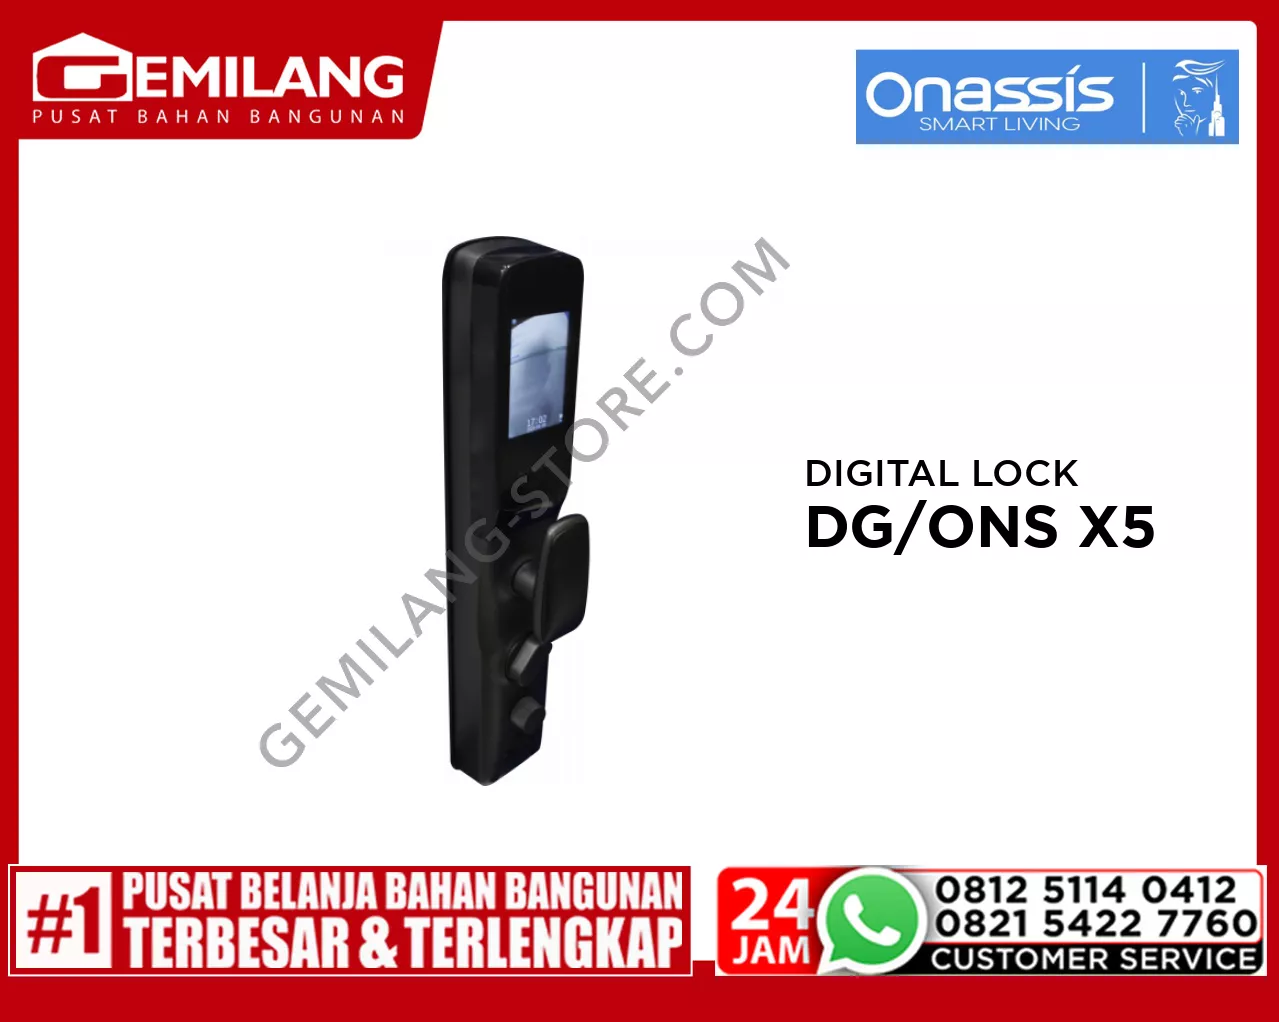 ONASSIS DIGITAL LOCK FOR WOODEN DOOR - DG/ONS X5 PRO